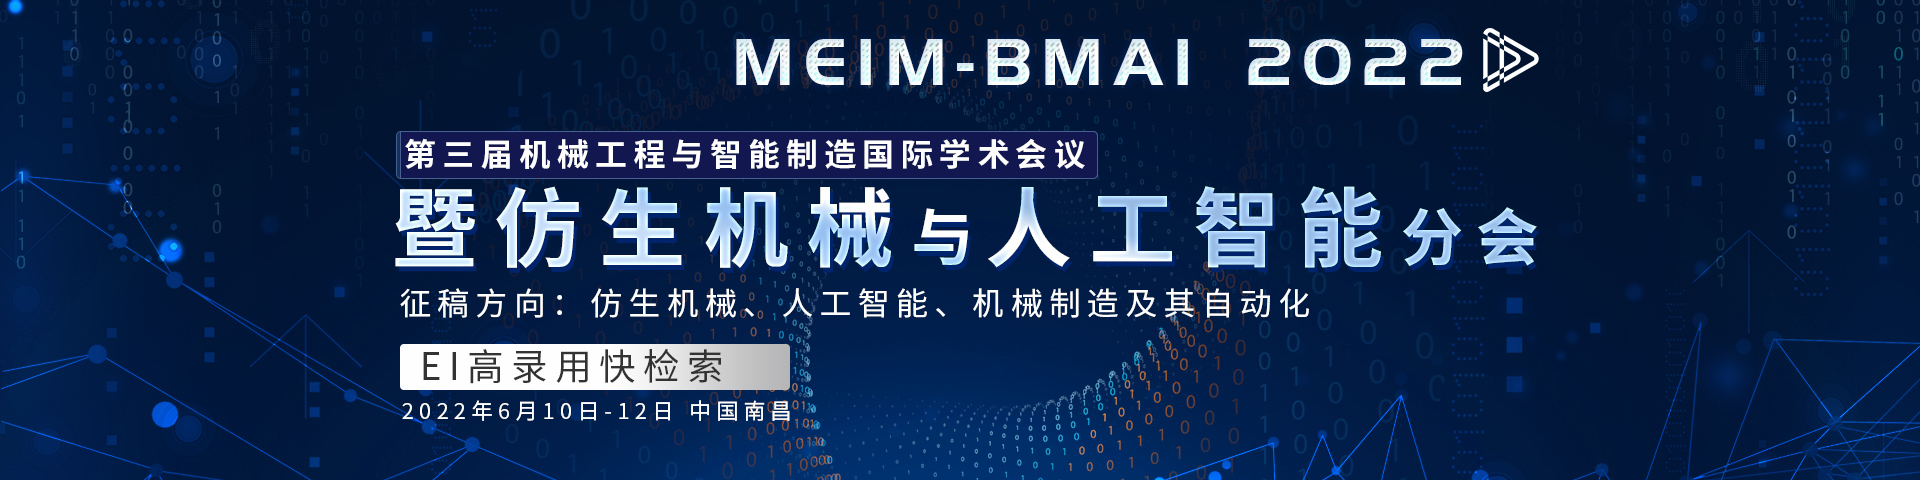 6月南昌-MEIIM-BMAI-艾思平台-尹旭舟20220407.jpg